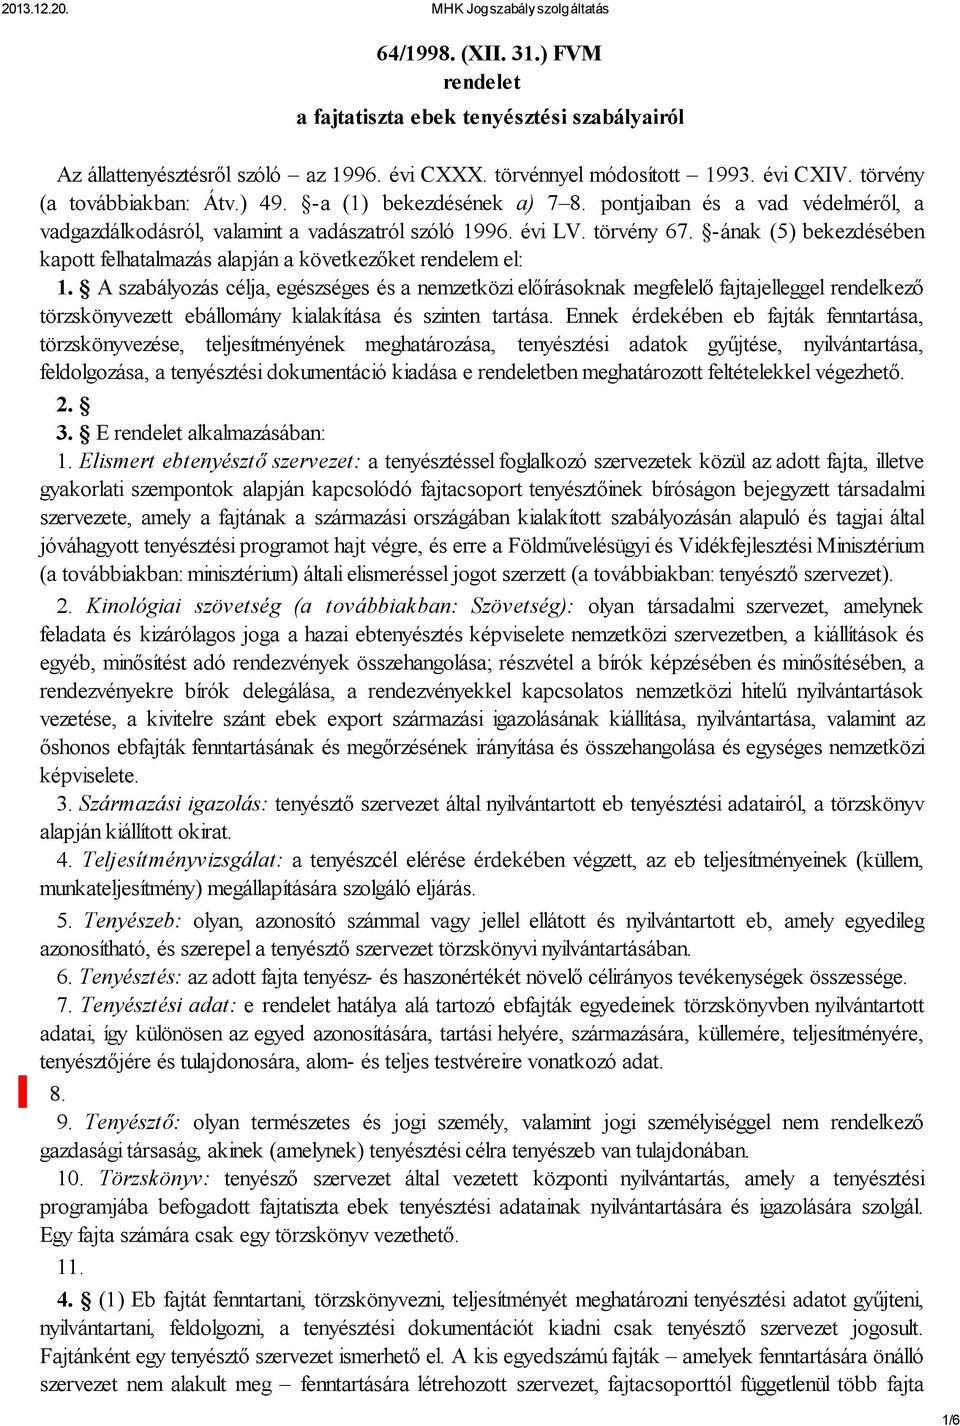 64/1998. (XII. 31.) FVM rendelet a fajtatiszta ebek tenyésztési  szabályairól - PDF Ingyenes letöltés